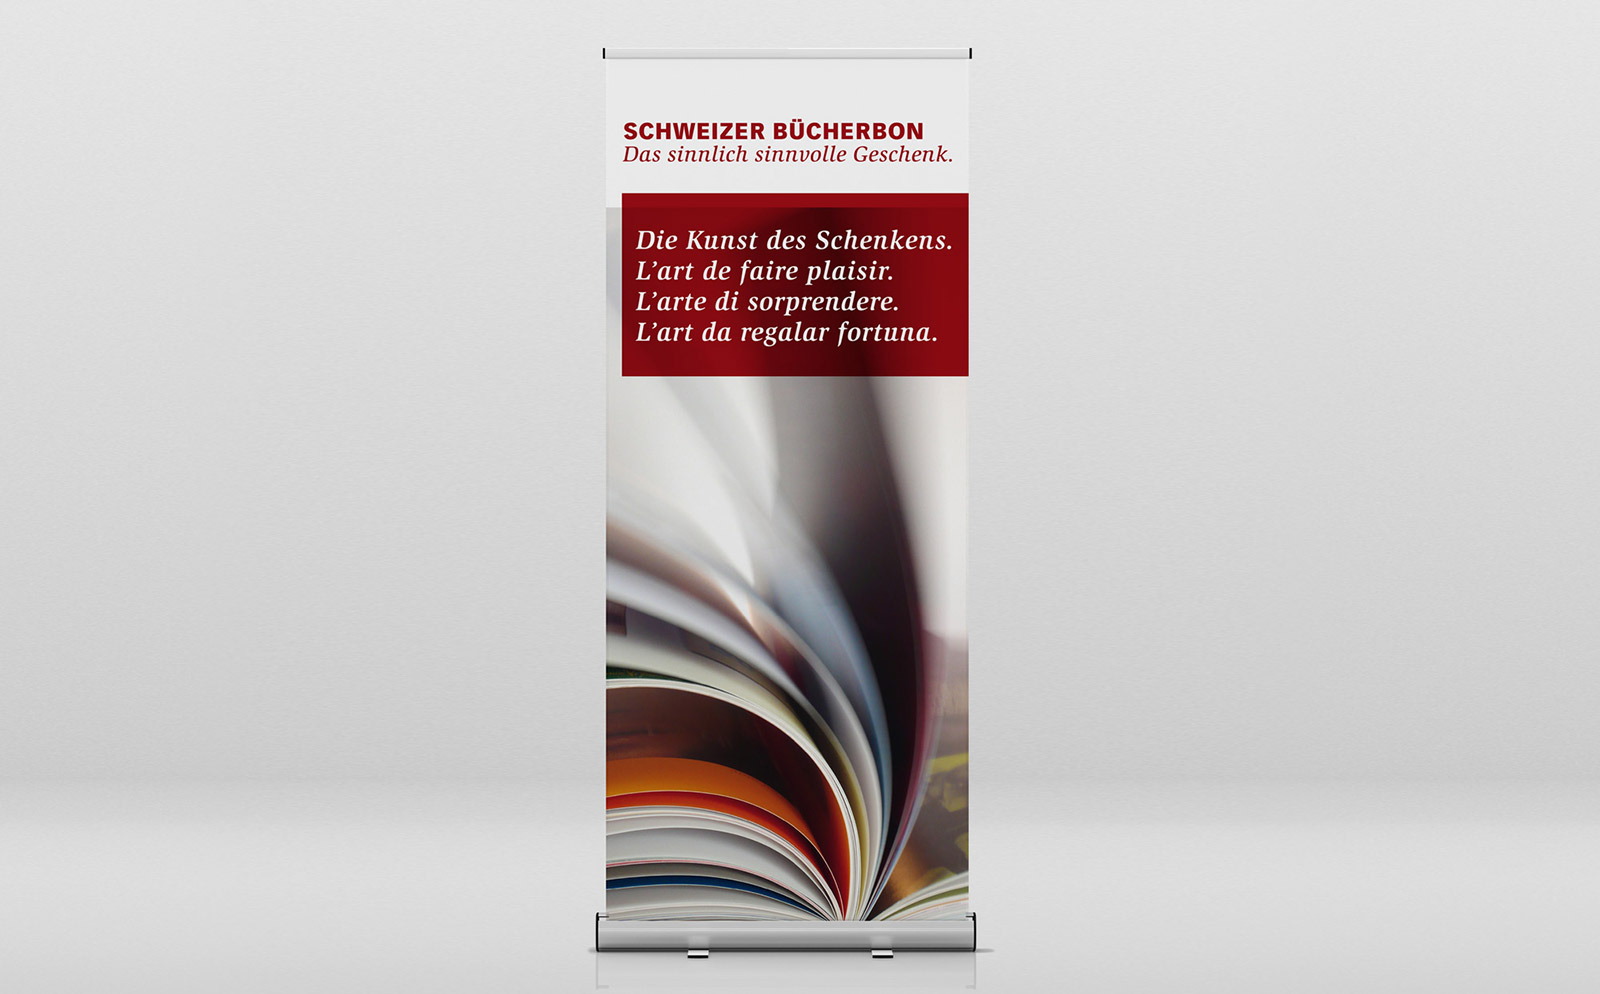 Roll-up Schweizer Bücherbon